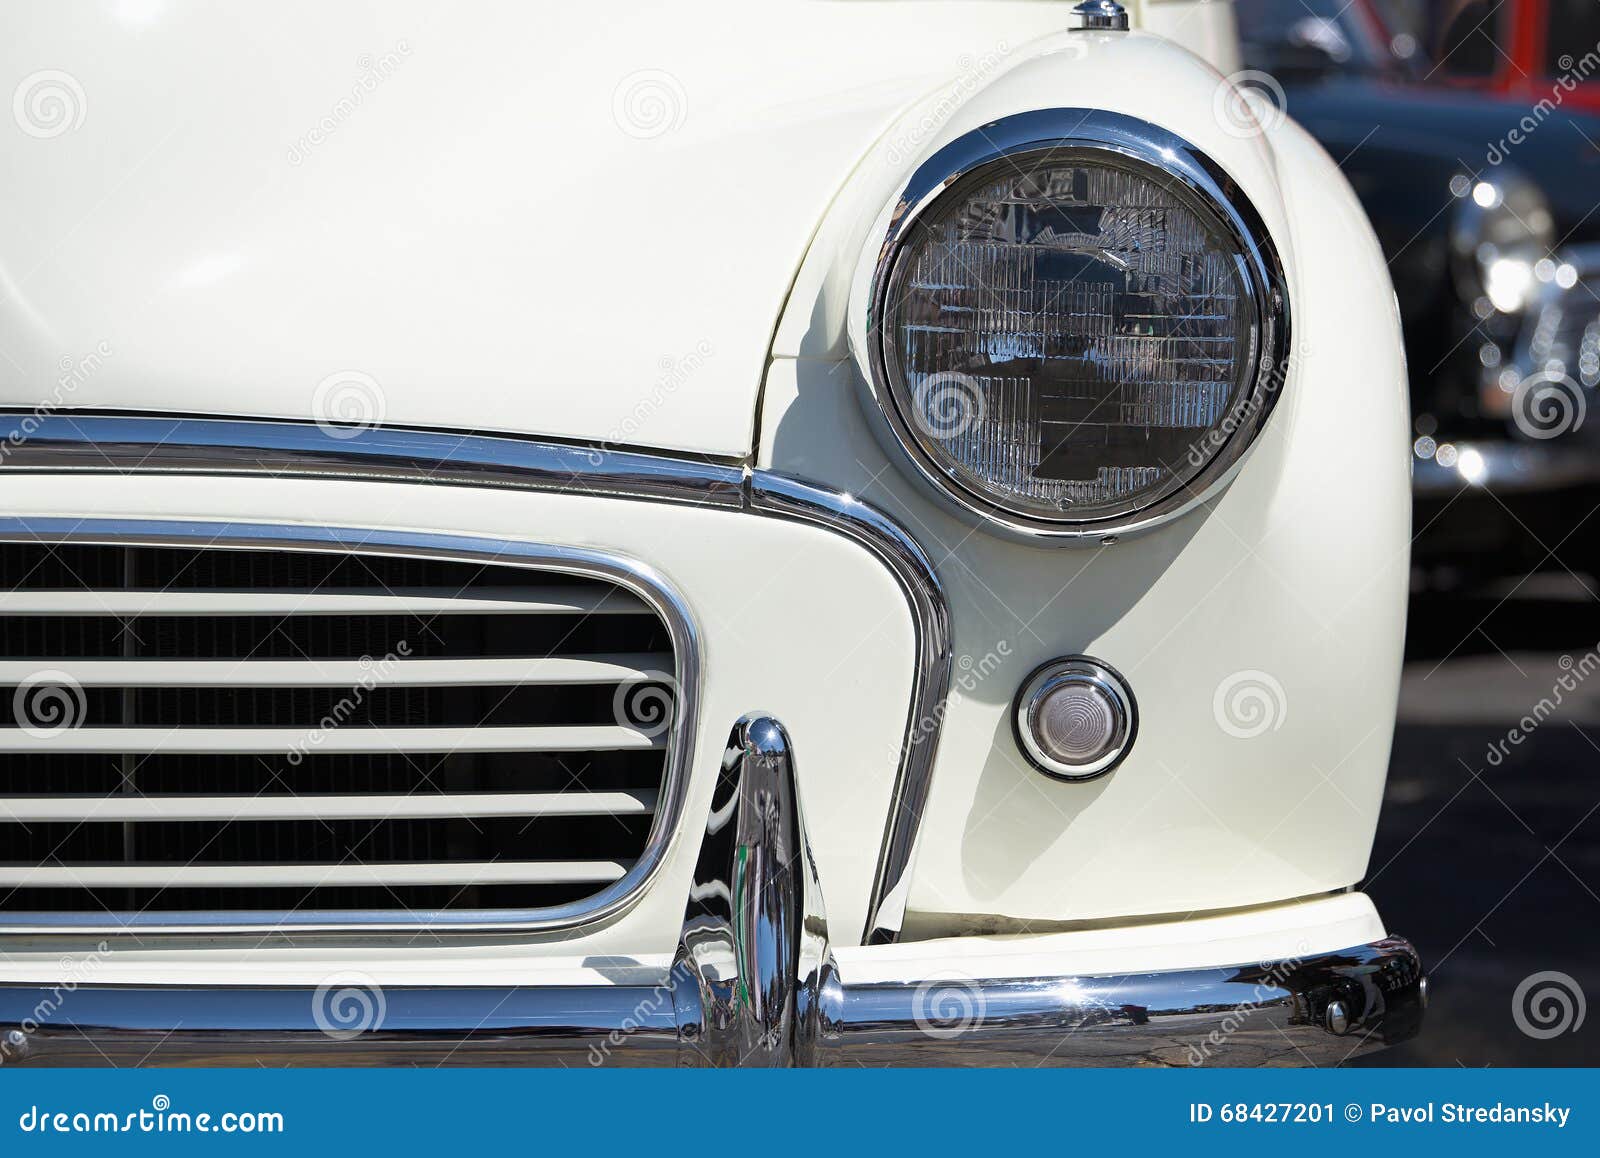 Vintage Car Light 63